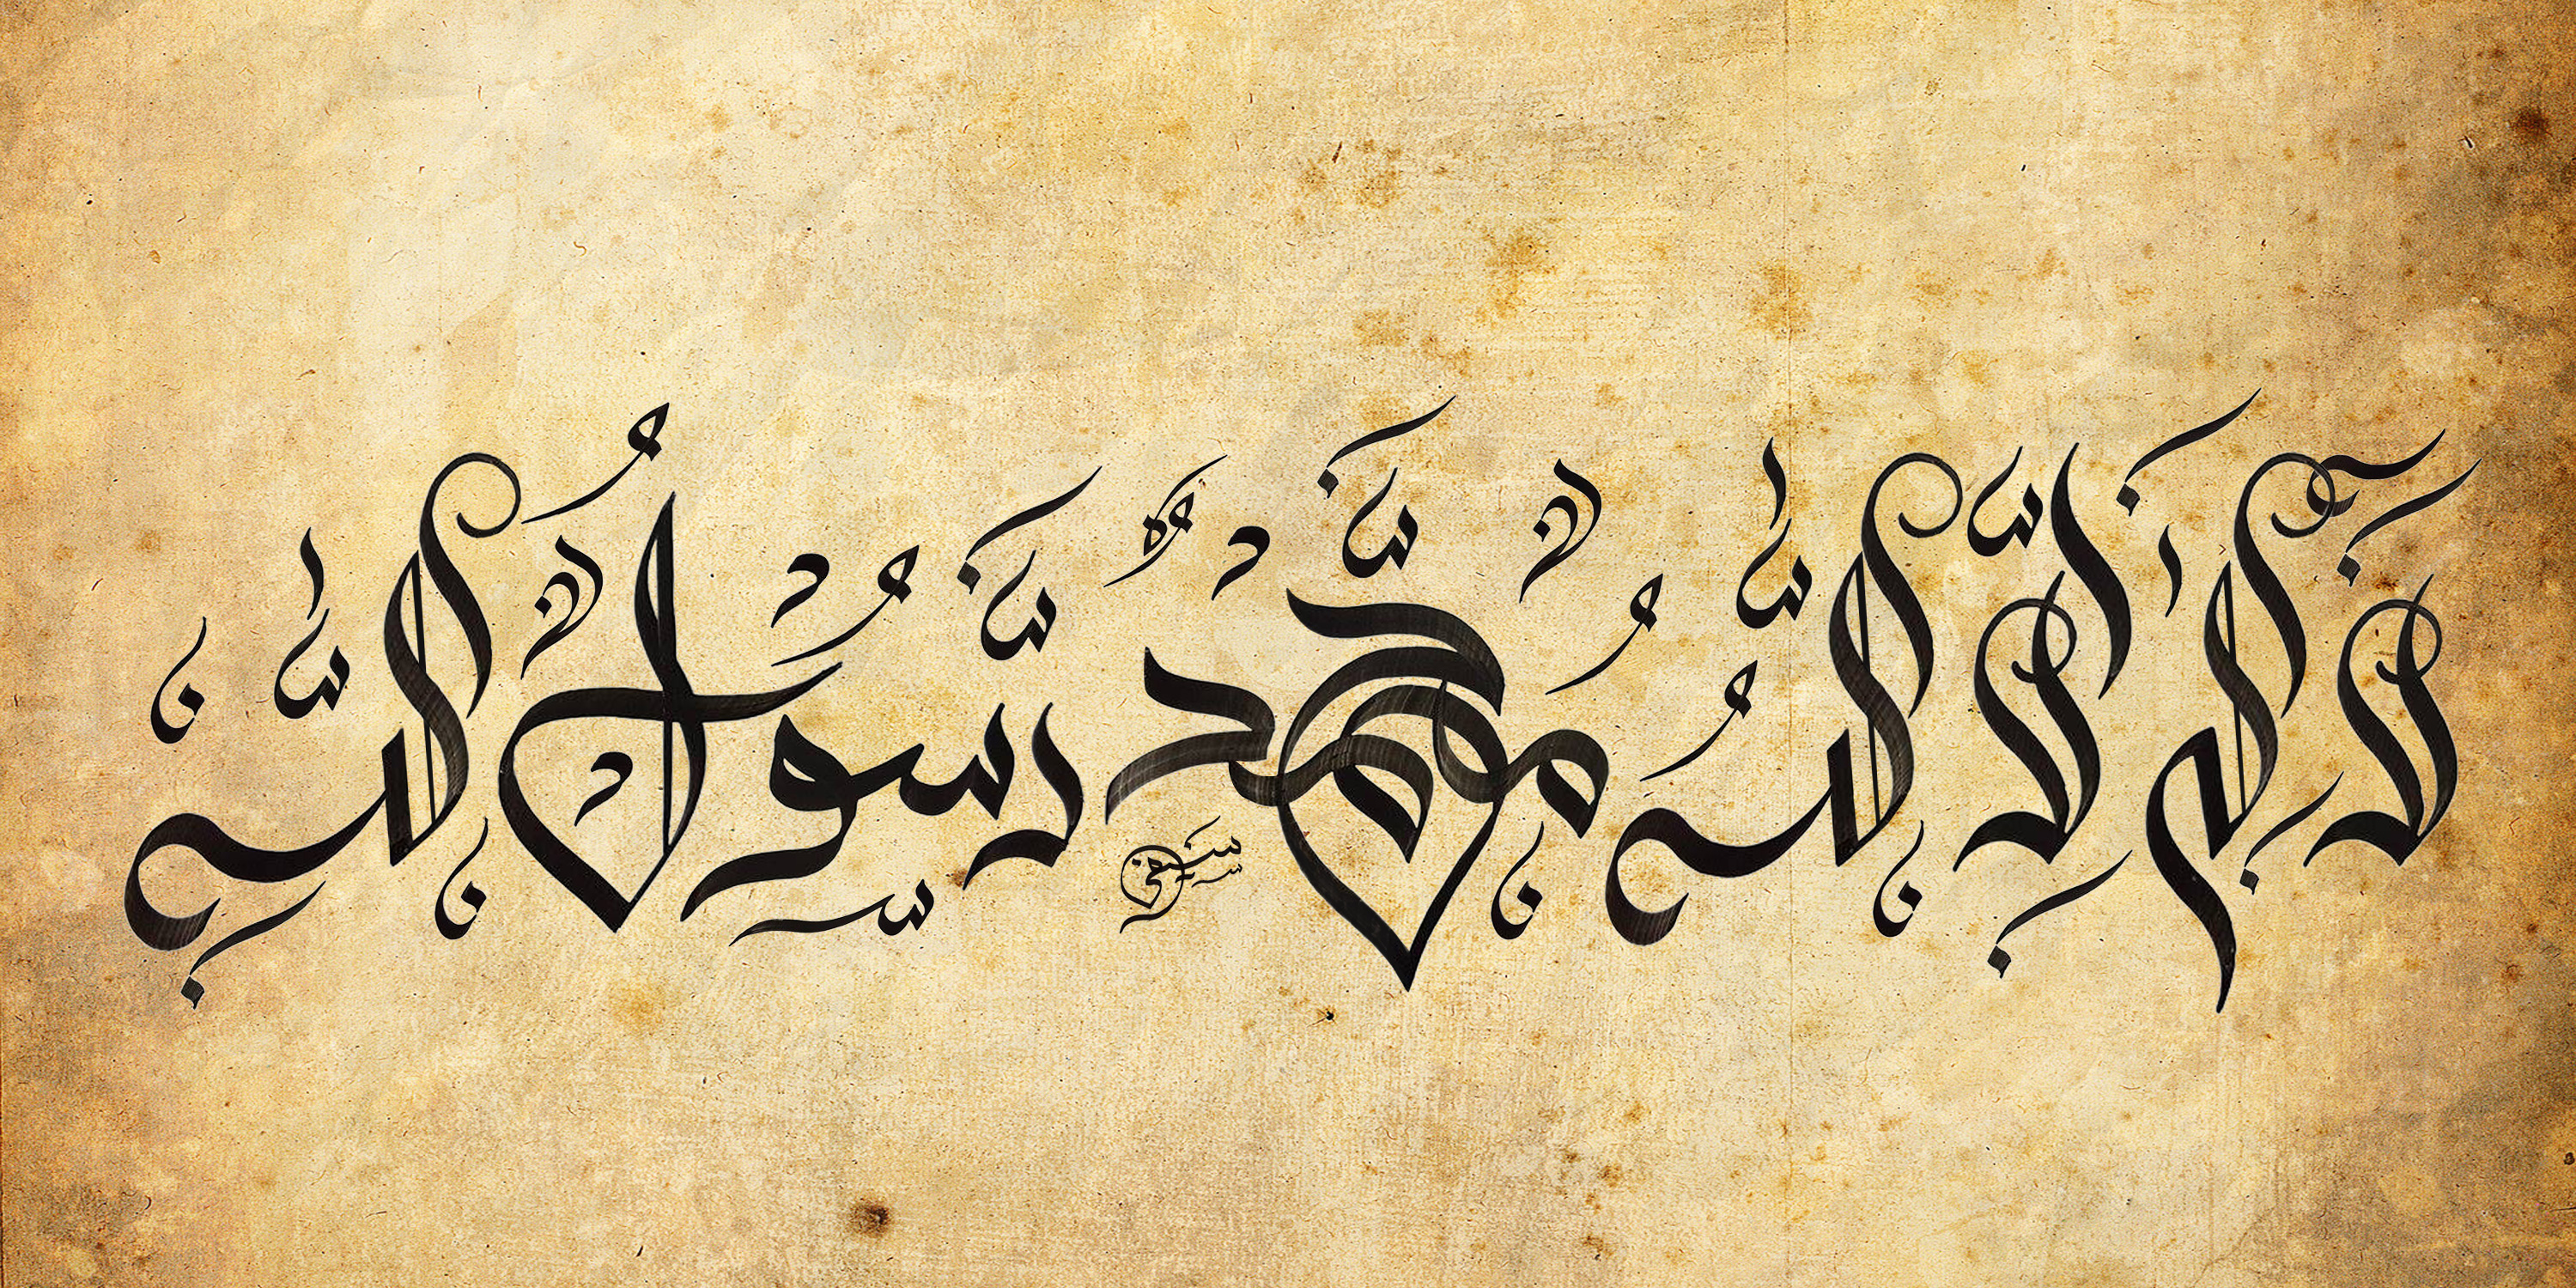 dubai arabic font